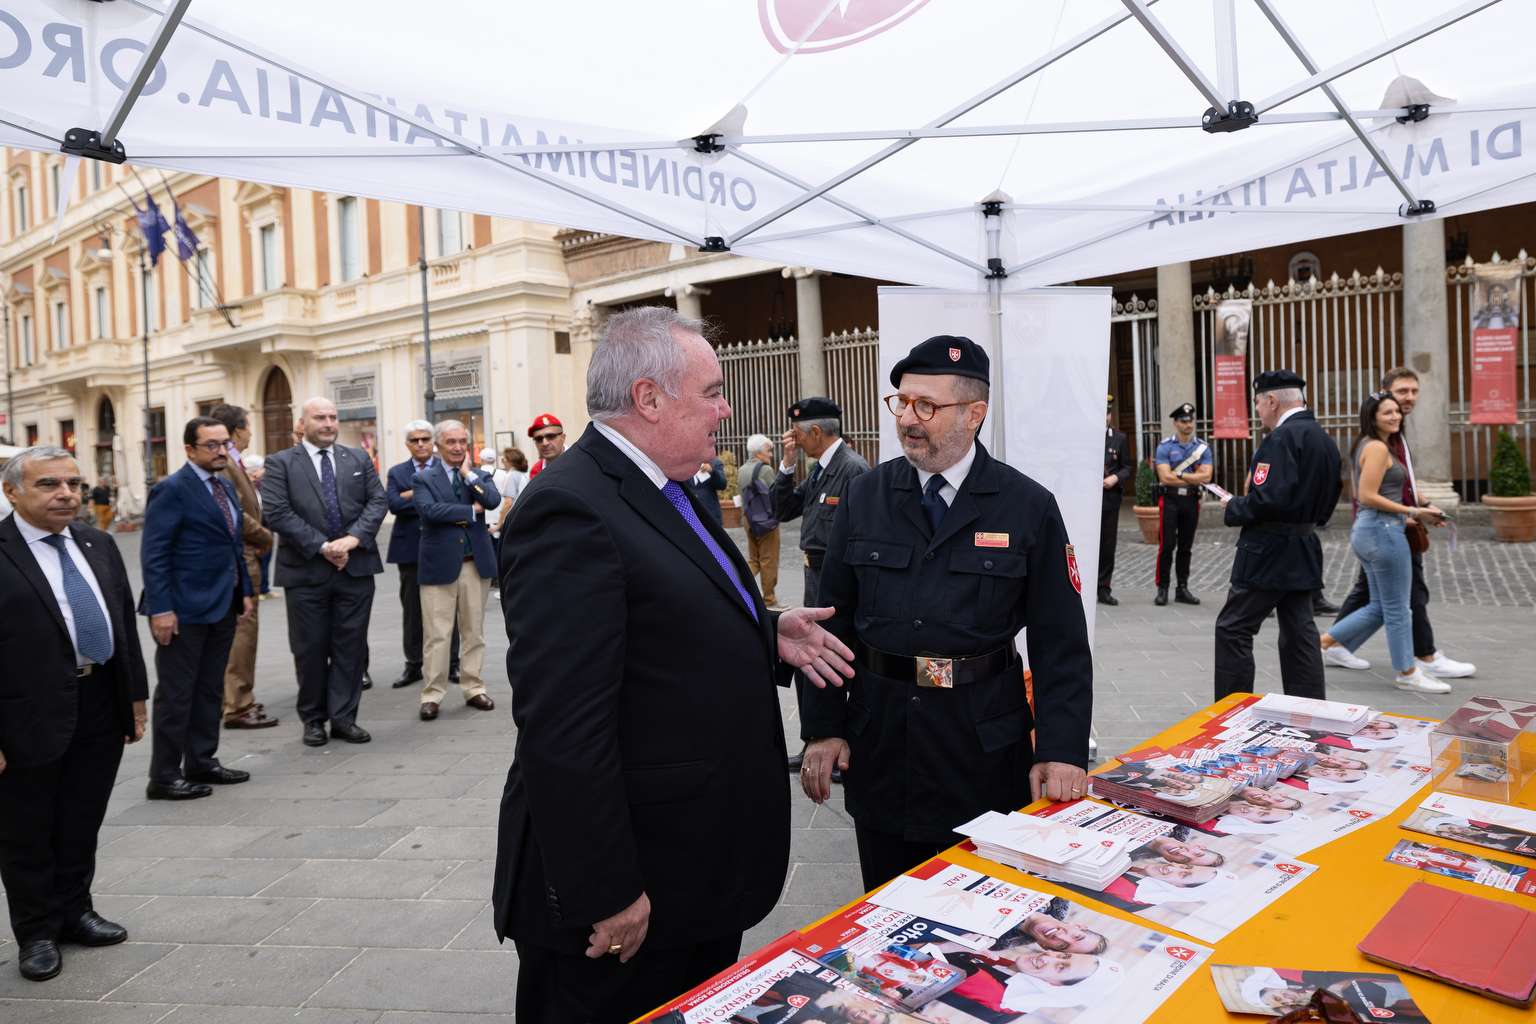 La Journée mondiale de l’Ordre de Malte célébrée en Italie et dans dix autres pays